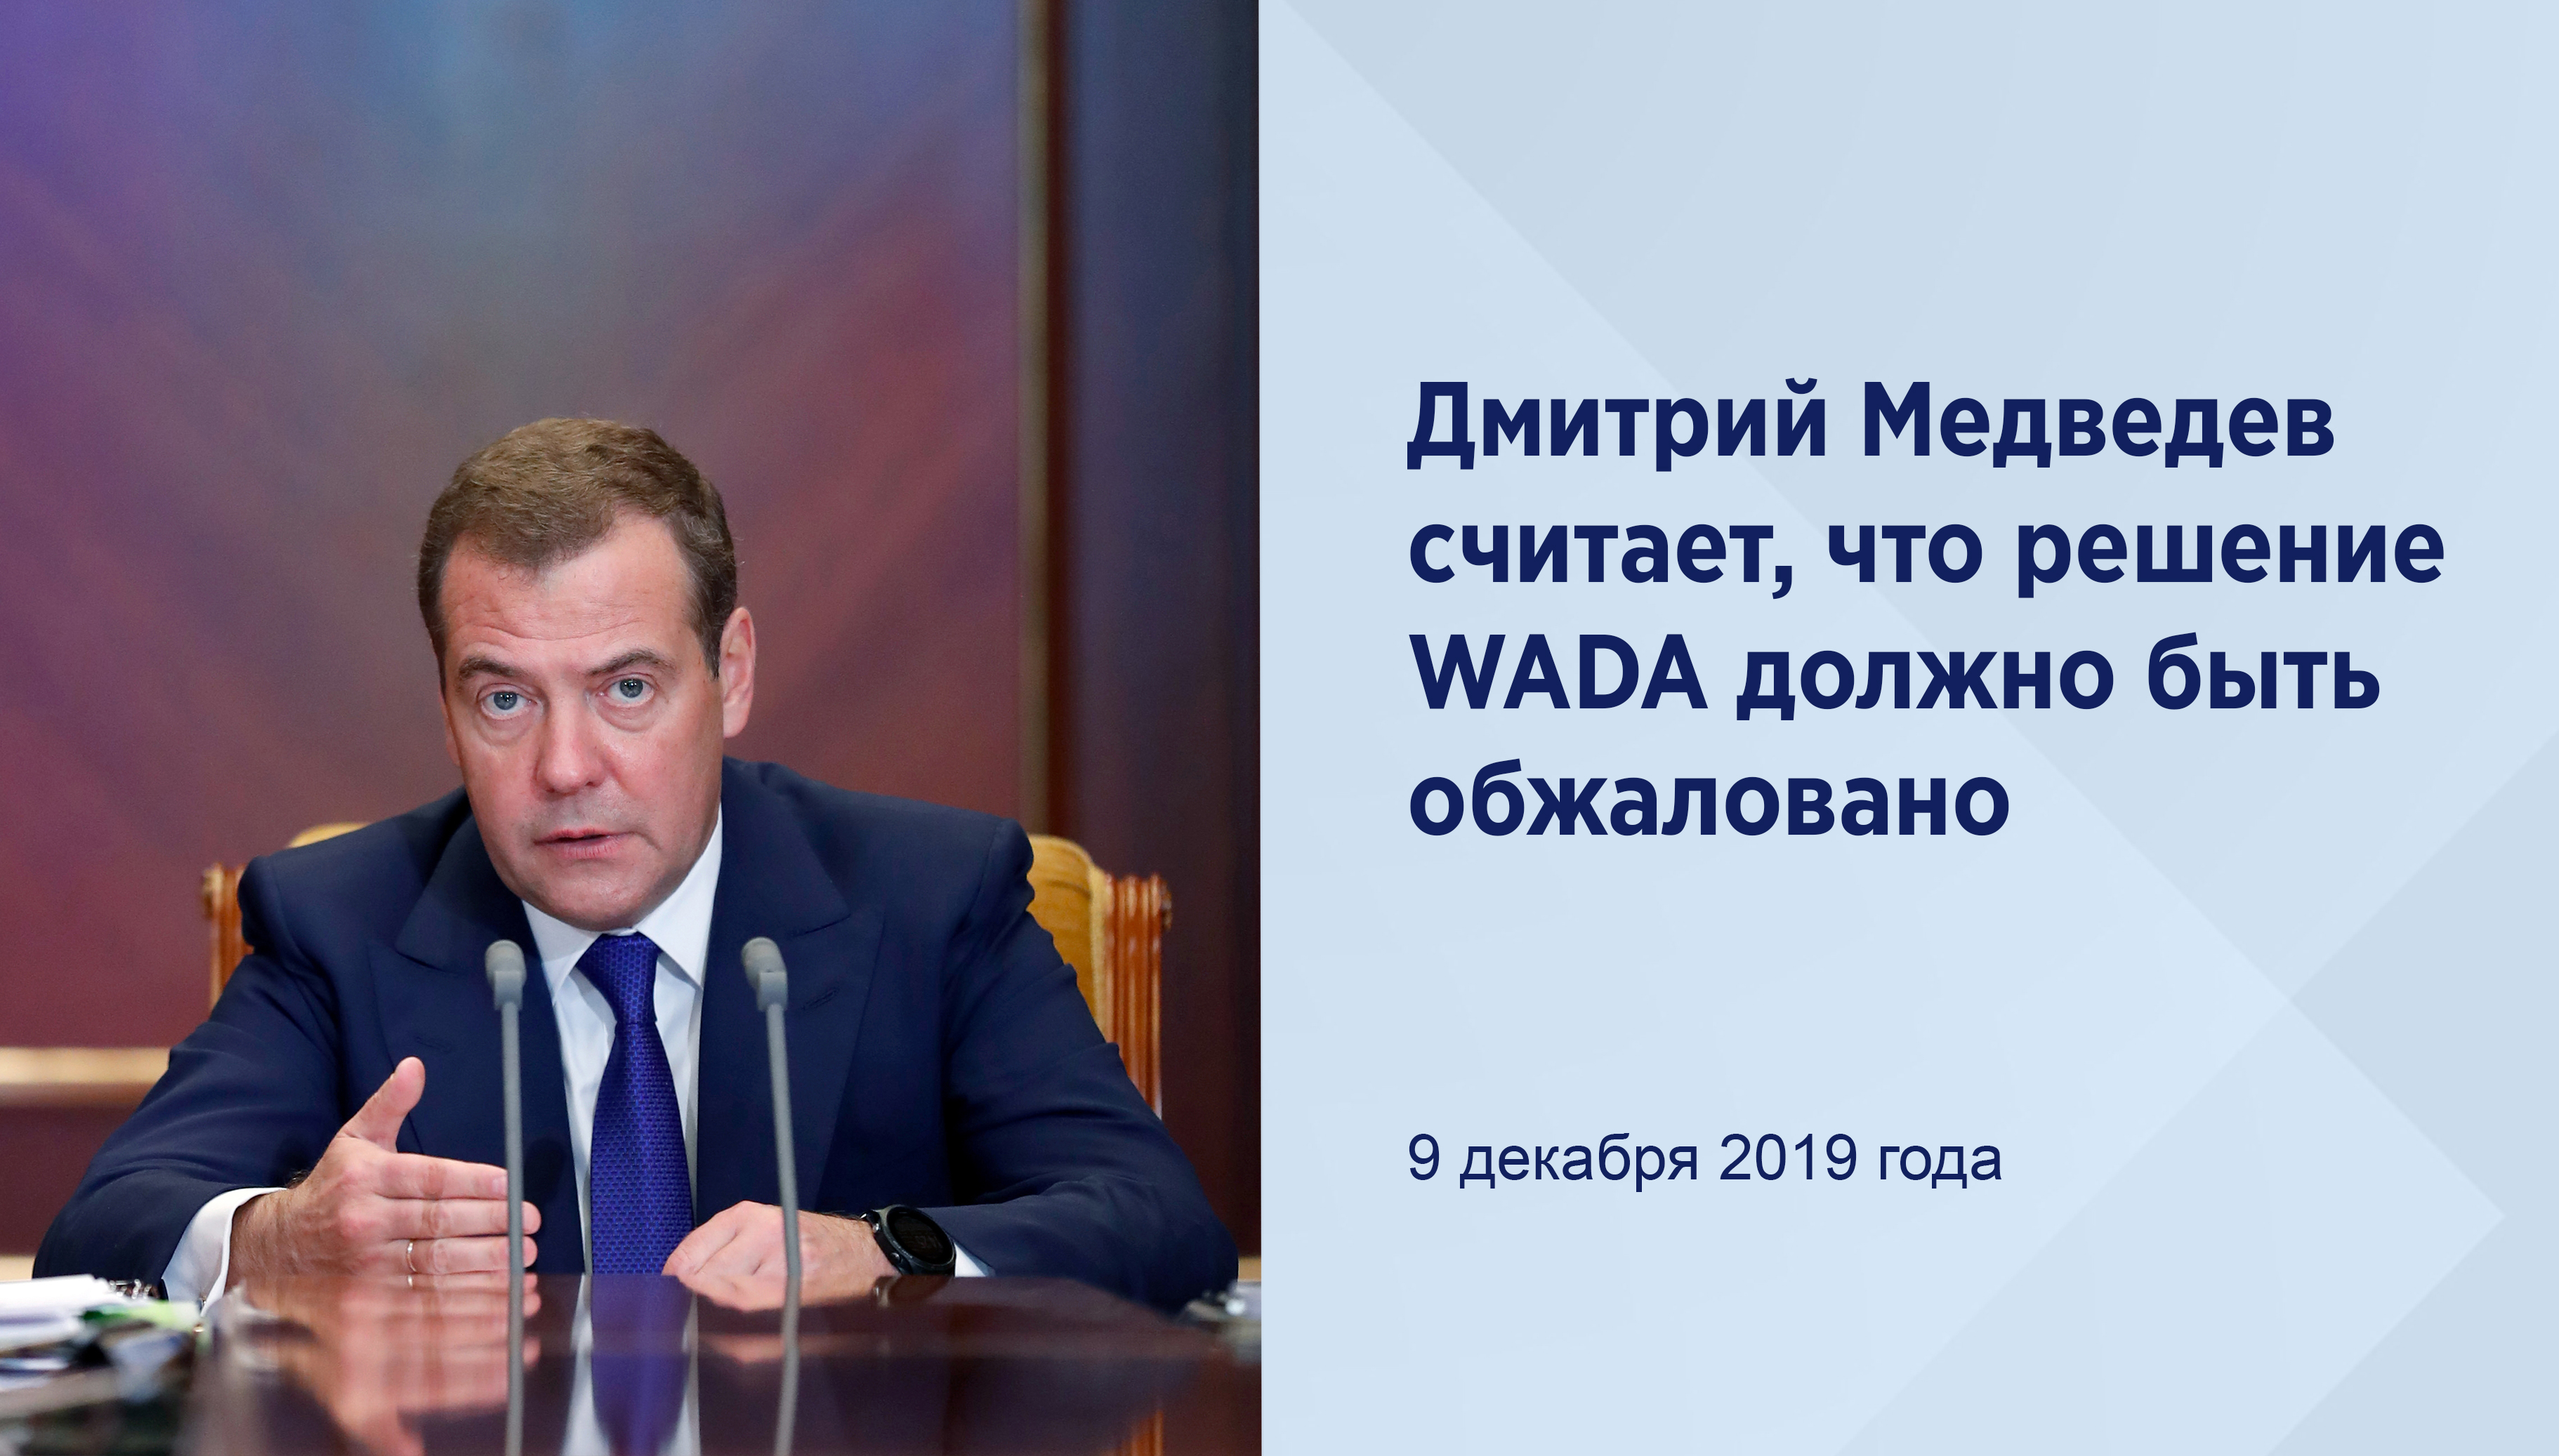 Медведев считает, что решение WADA
должно быть обжаловано